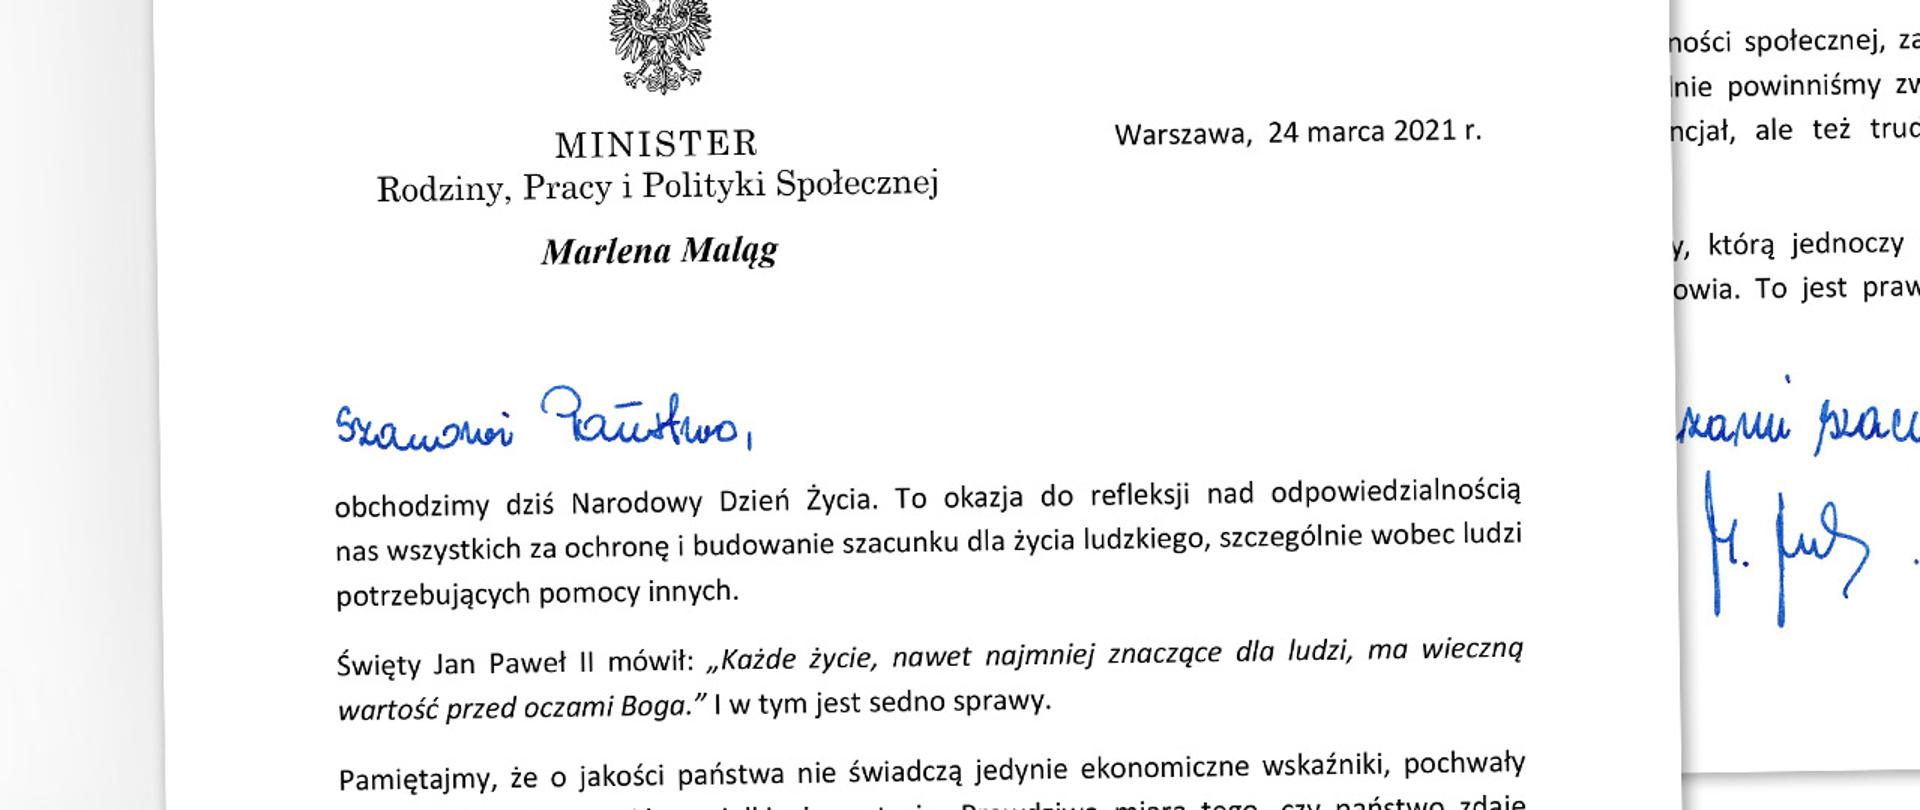 Minister Marlena Maląg - życzenia z okazji Narodowego Dnia Zycia